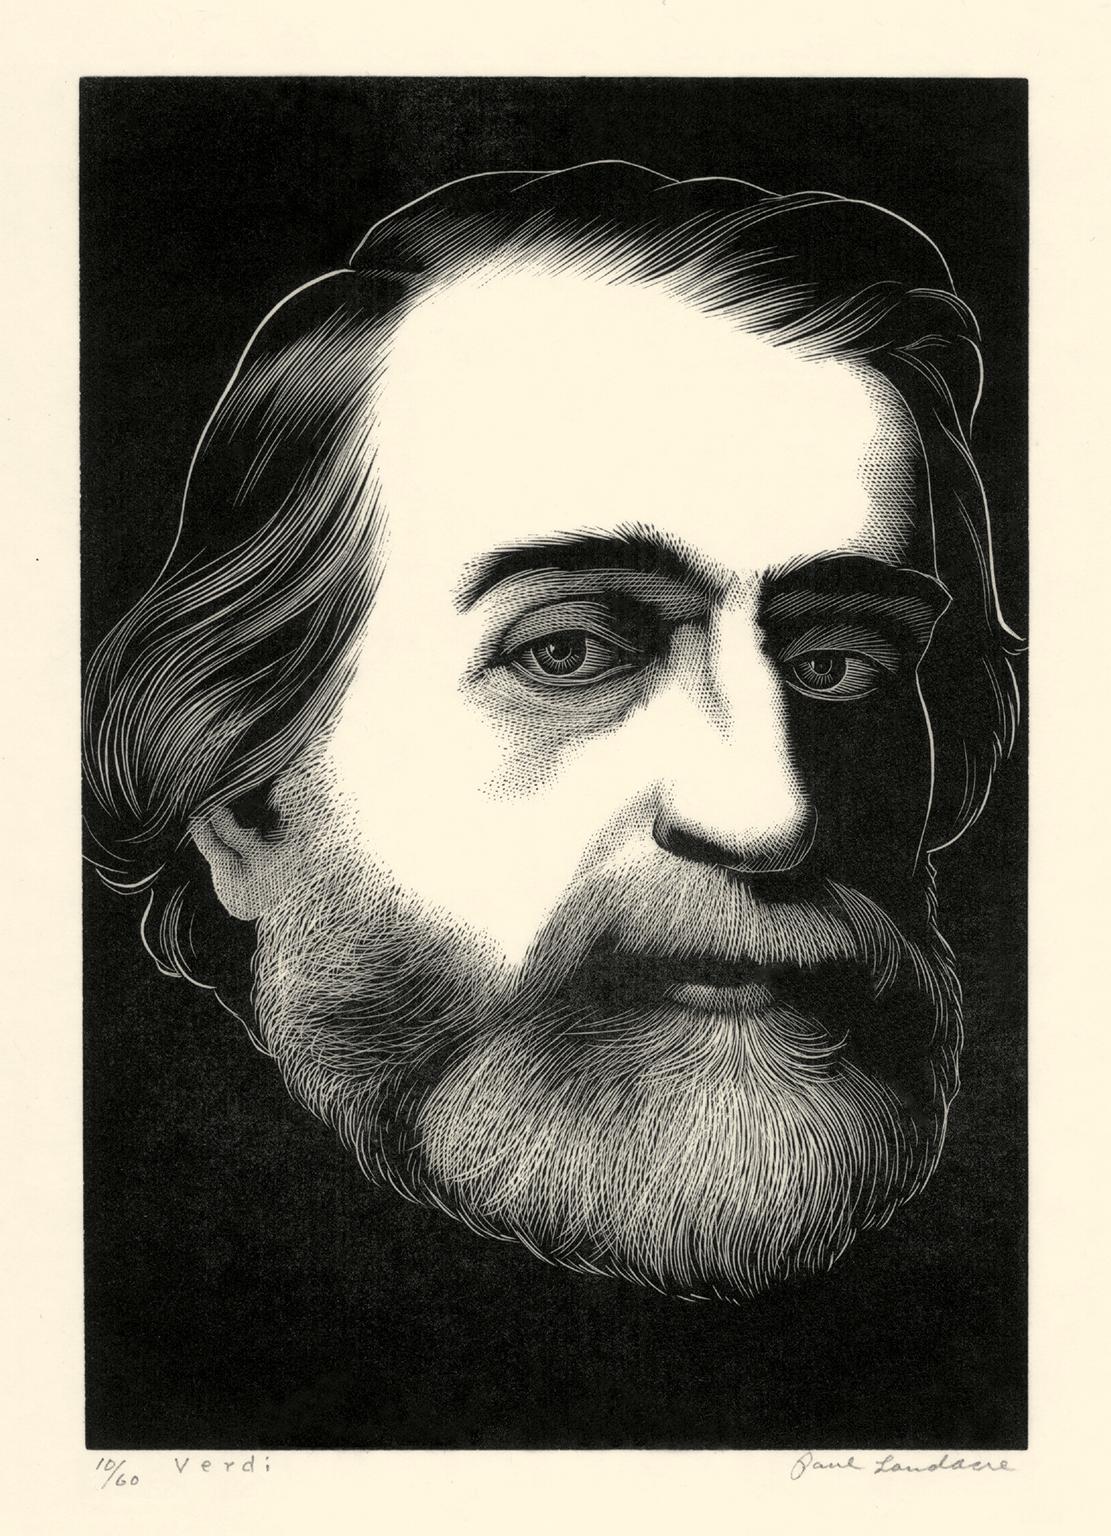 Paul Landacre Portrait Print – 'Verdi' - Amerikanische Moderne der 1930er Jahre - Italienischer Opernkomponist